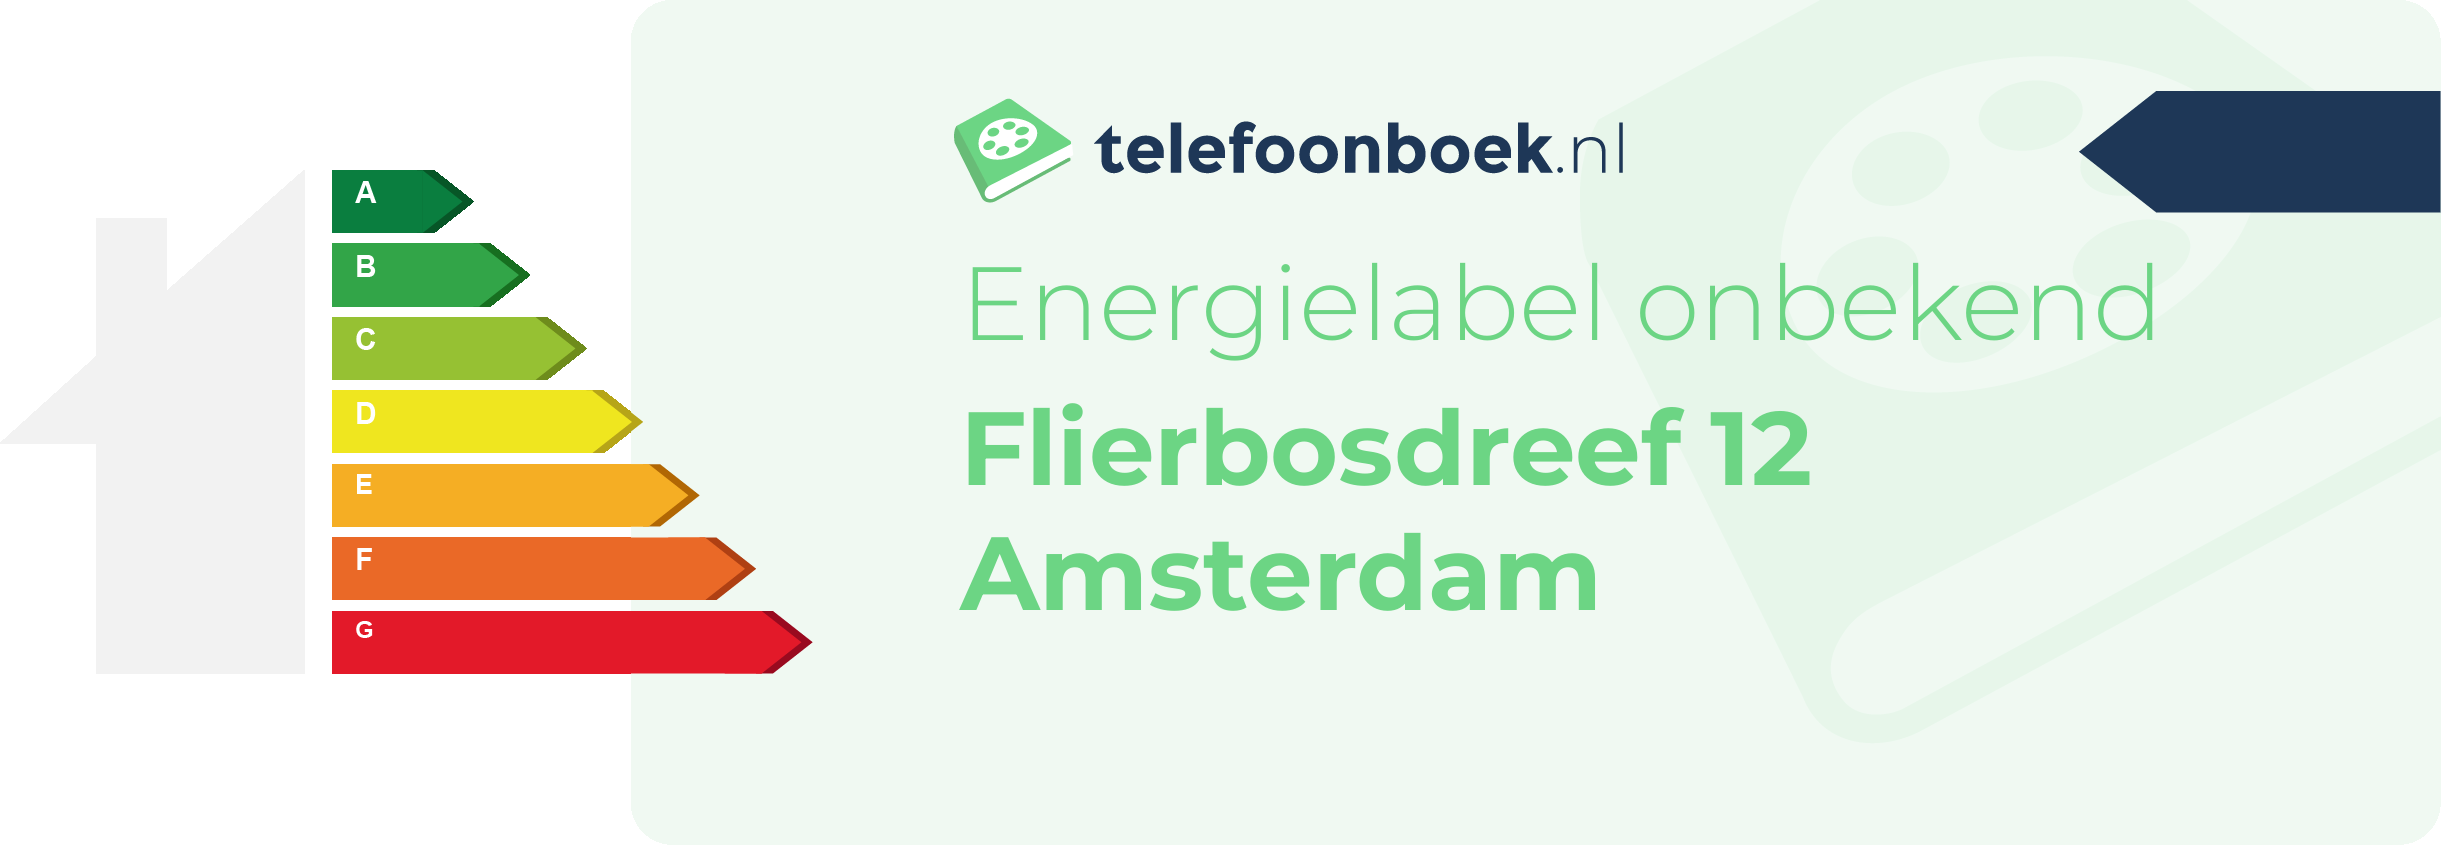 Energielabel Flierbosdreef 12 Amsterdam